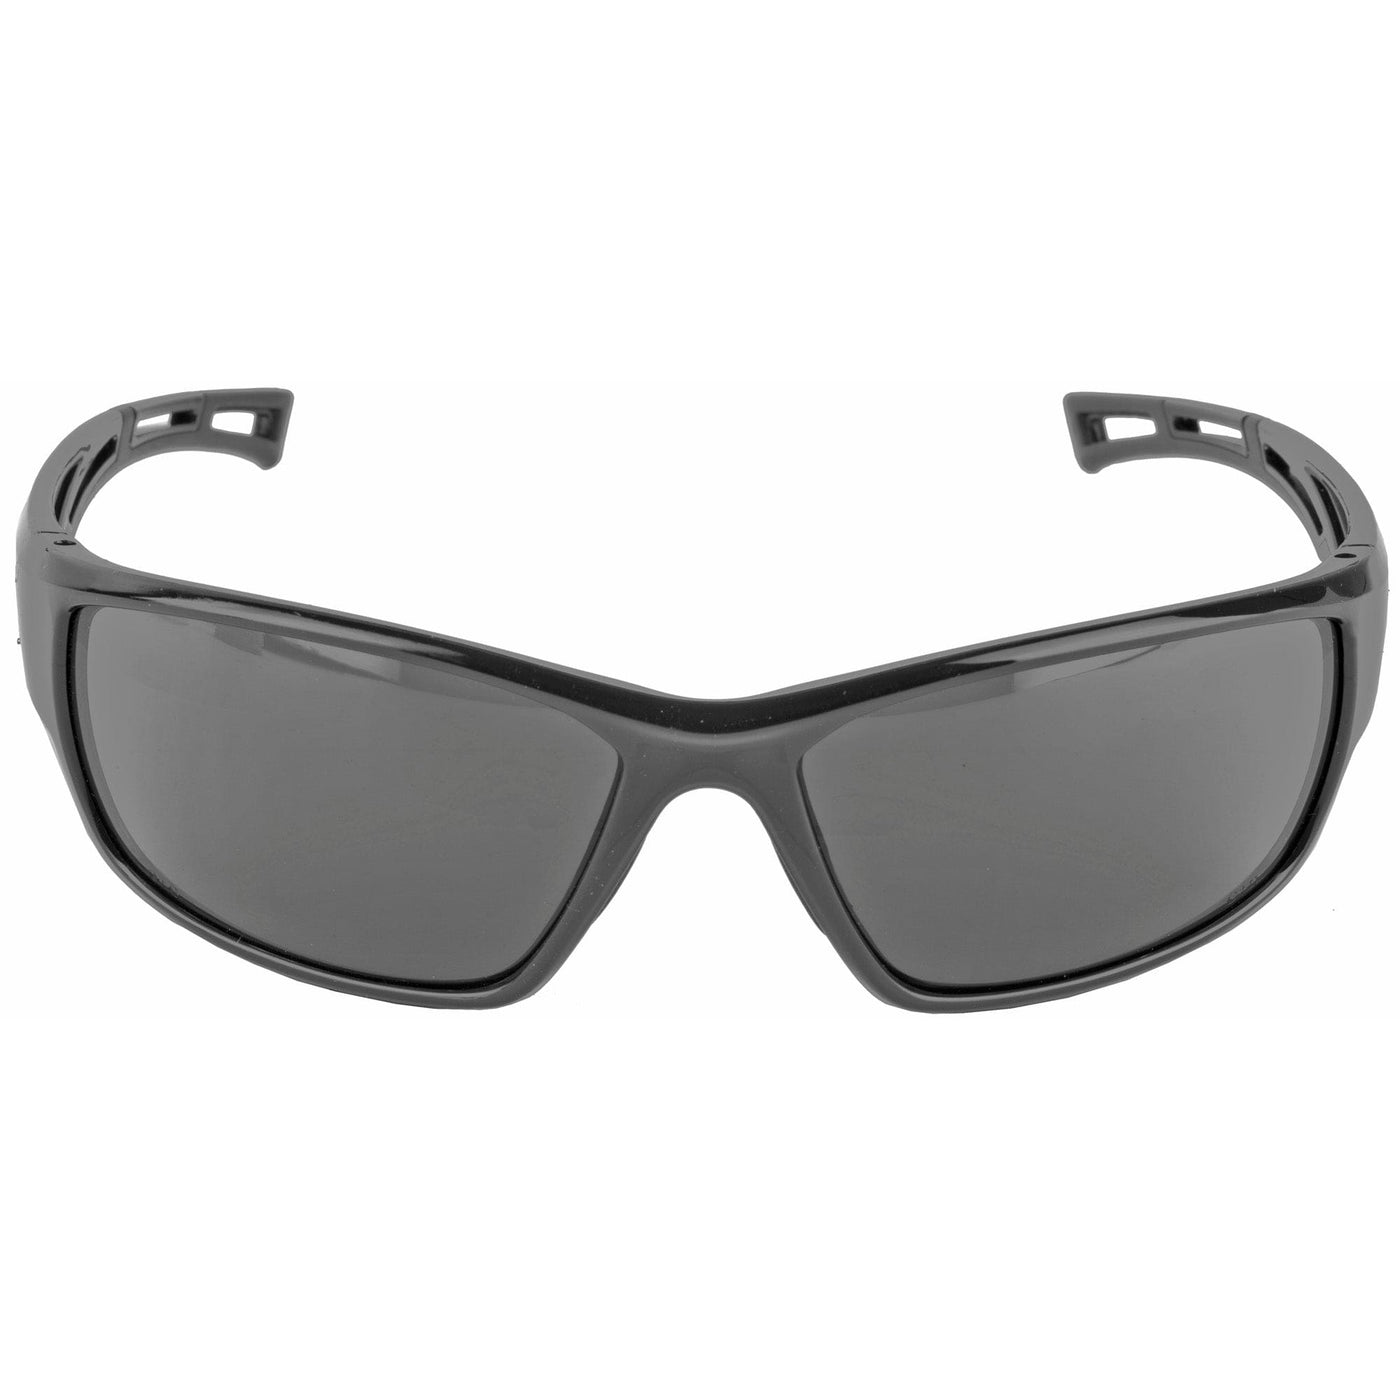 Walker's Walker's 8280 Prem Glasses Smoke Safety/Protection